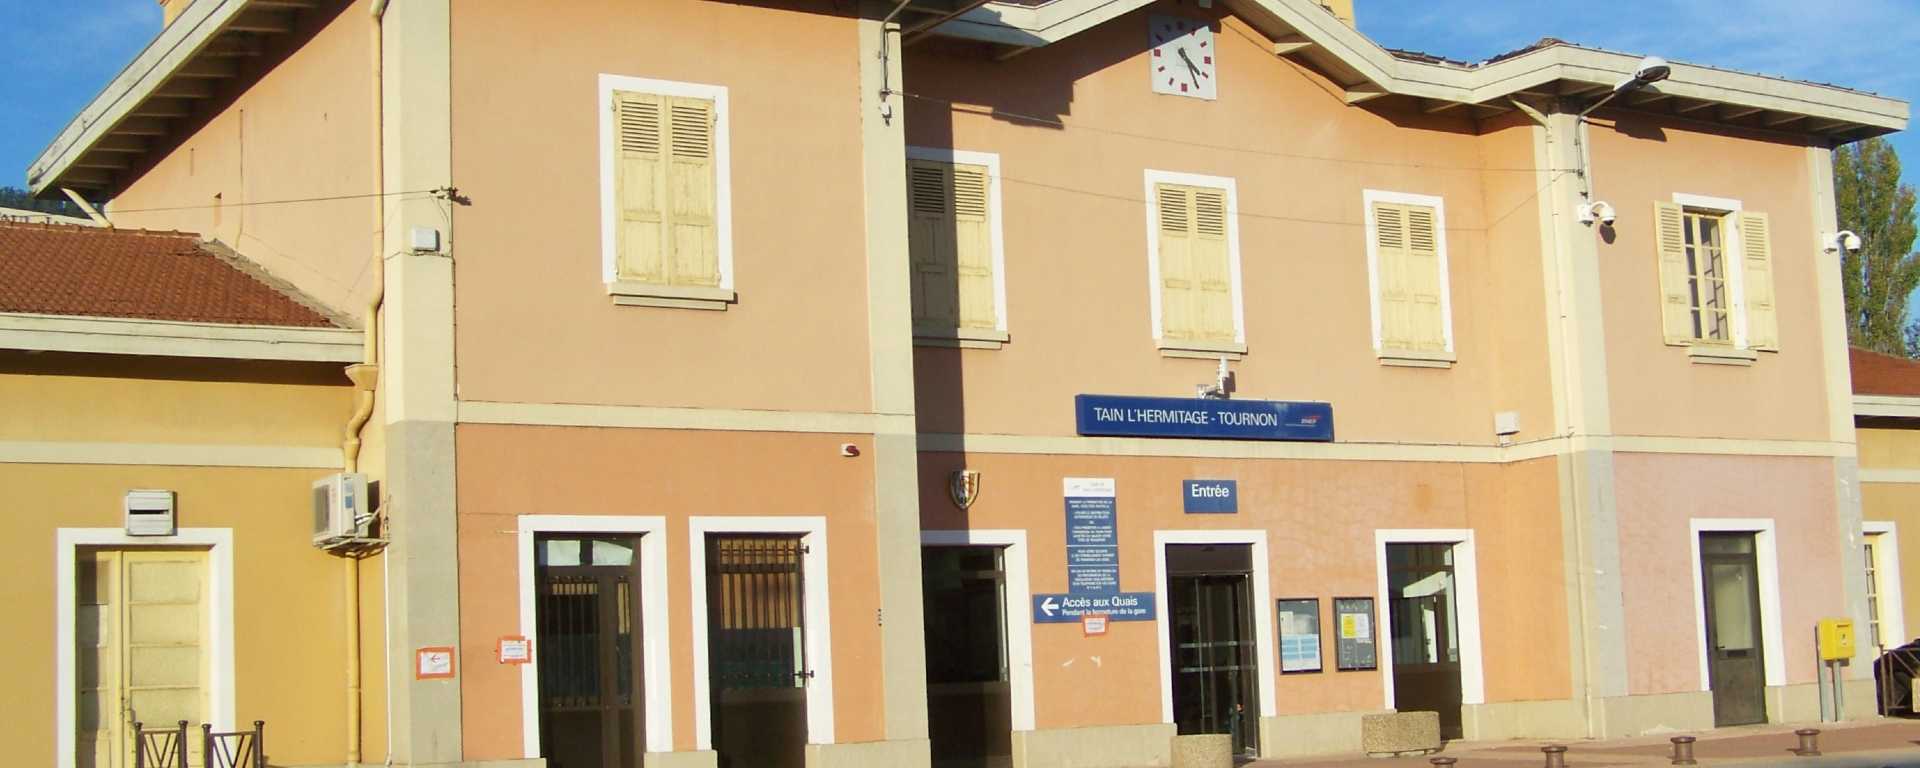 Façade d'entrée de la gare de Tain-l'Hermitage / Tournon-sur-Rhône